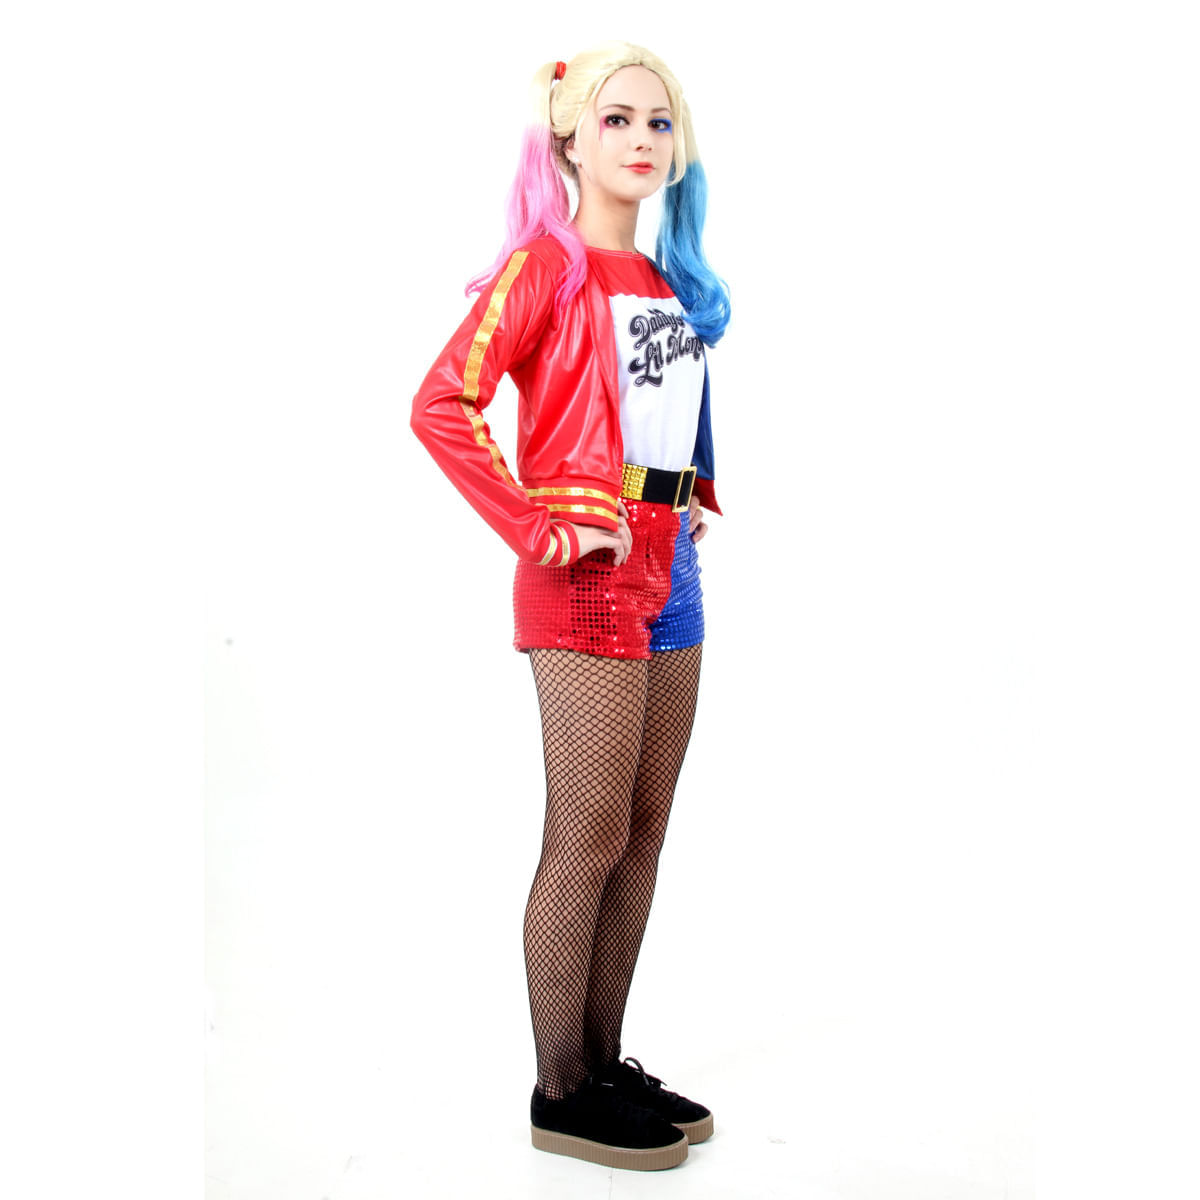 Fantasia Arlequina Teen - Harley Quinn - Esquadrão Suicida - Shop